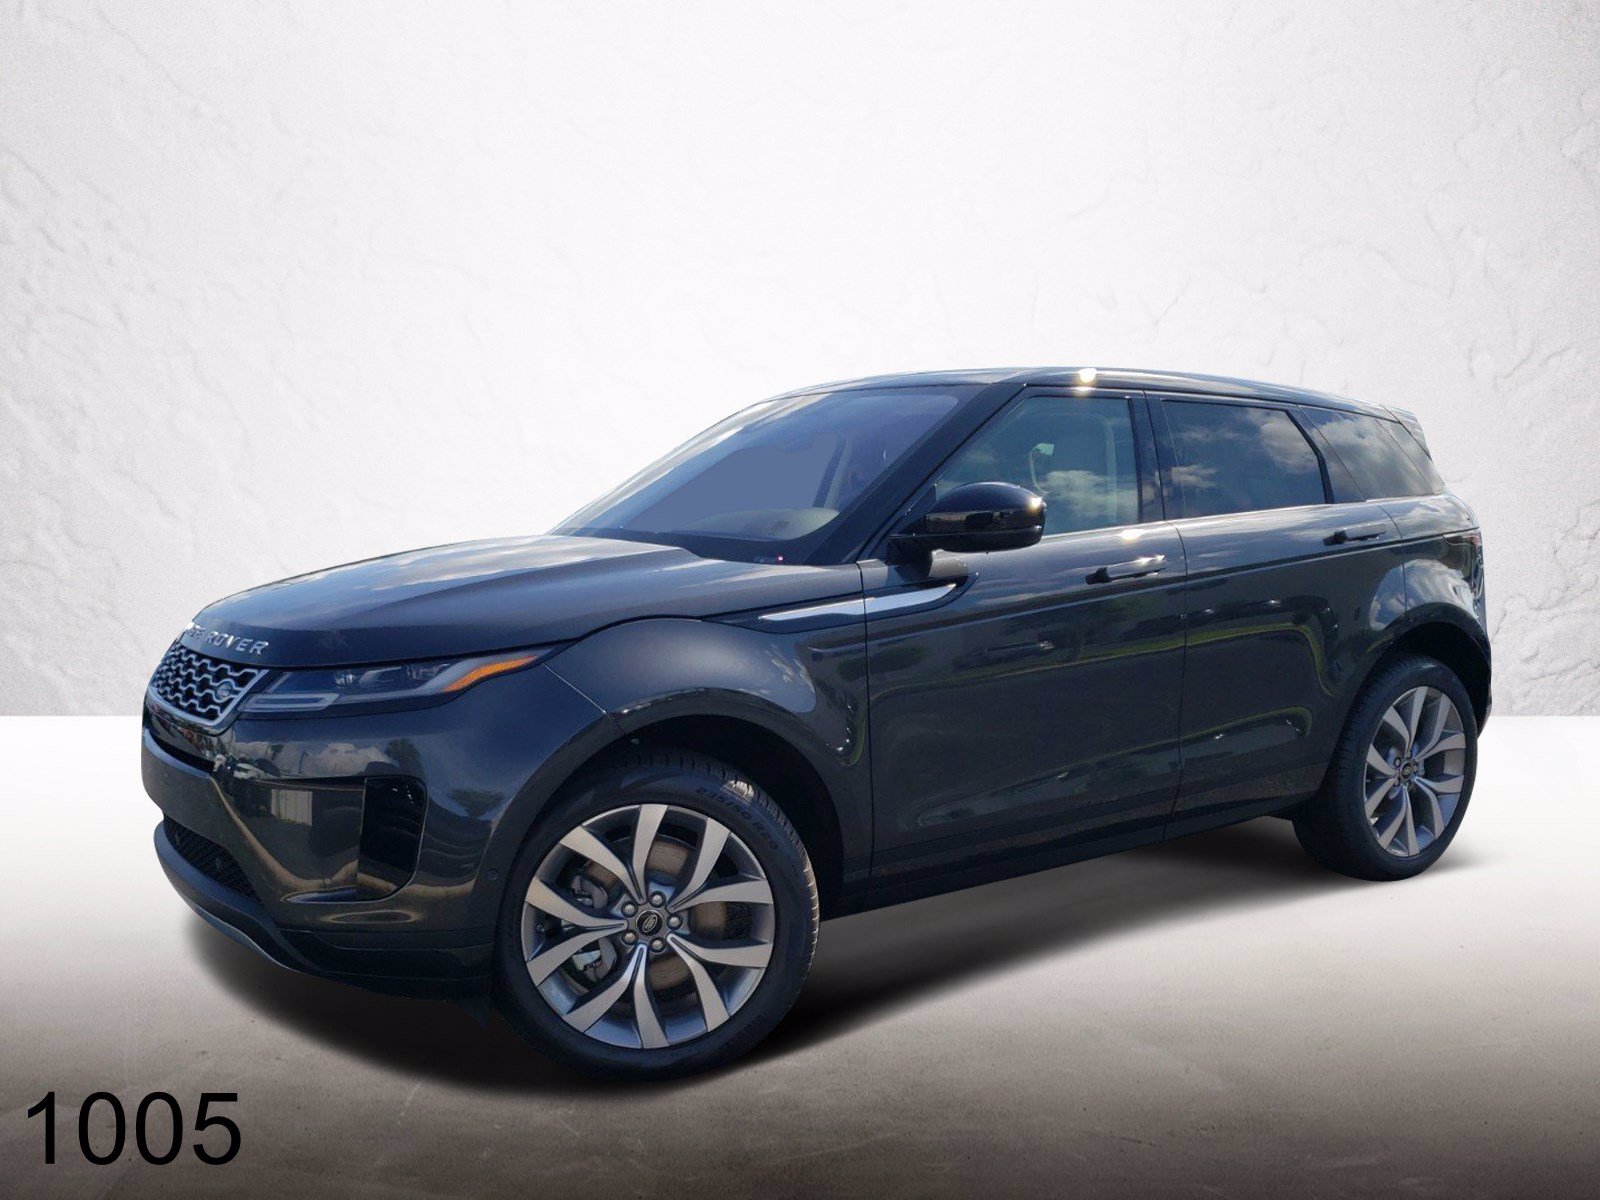 New 2020 Land Rover Range Rover Evoque Se